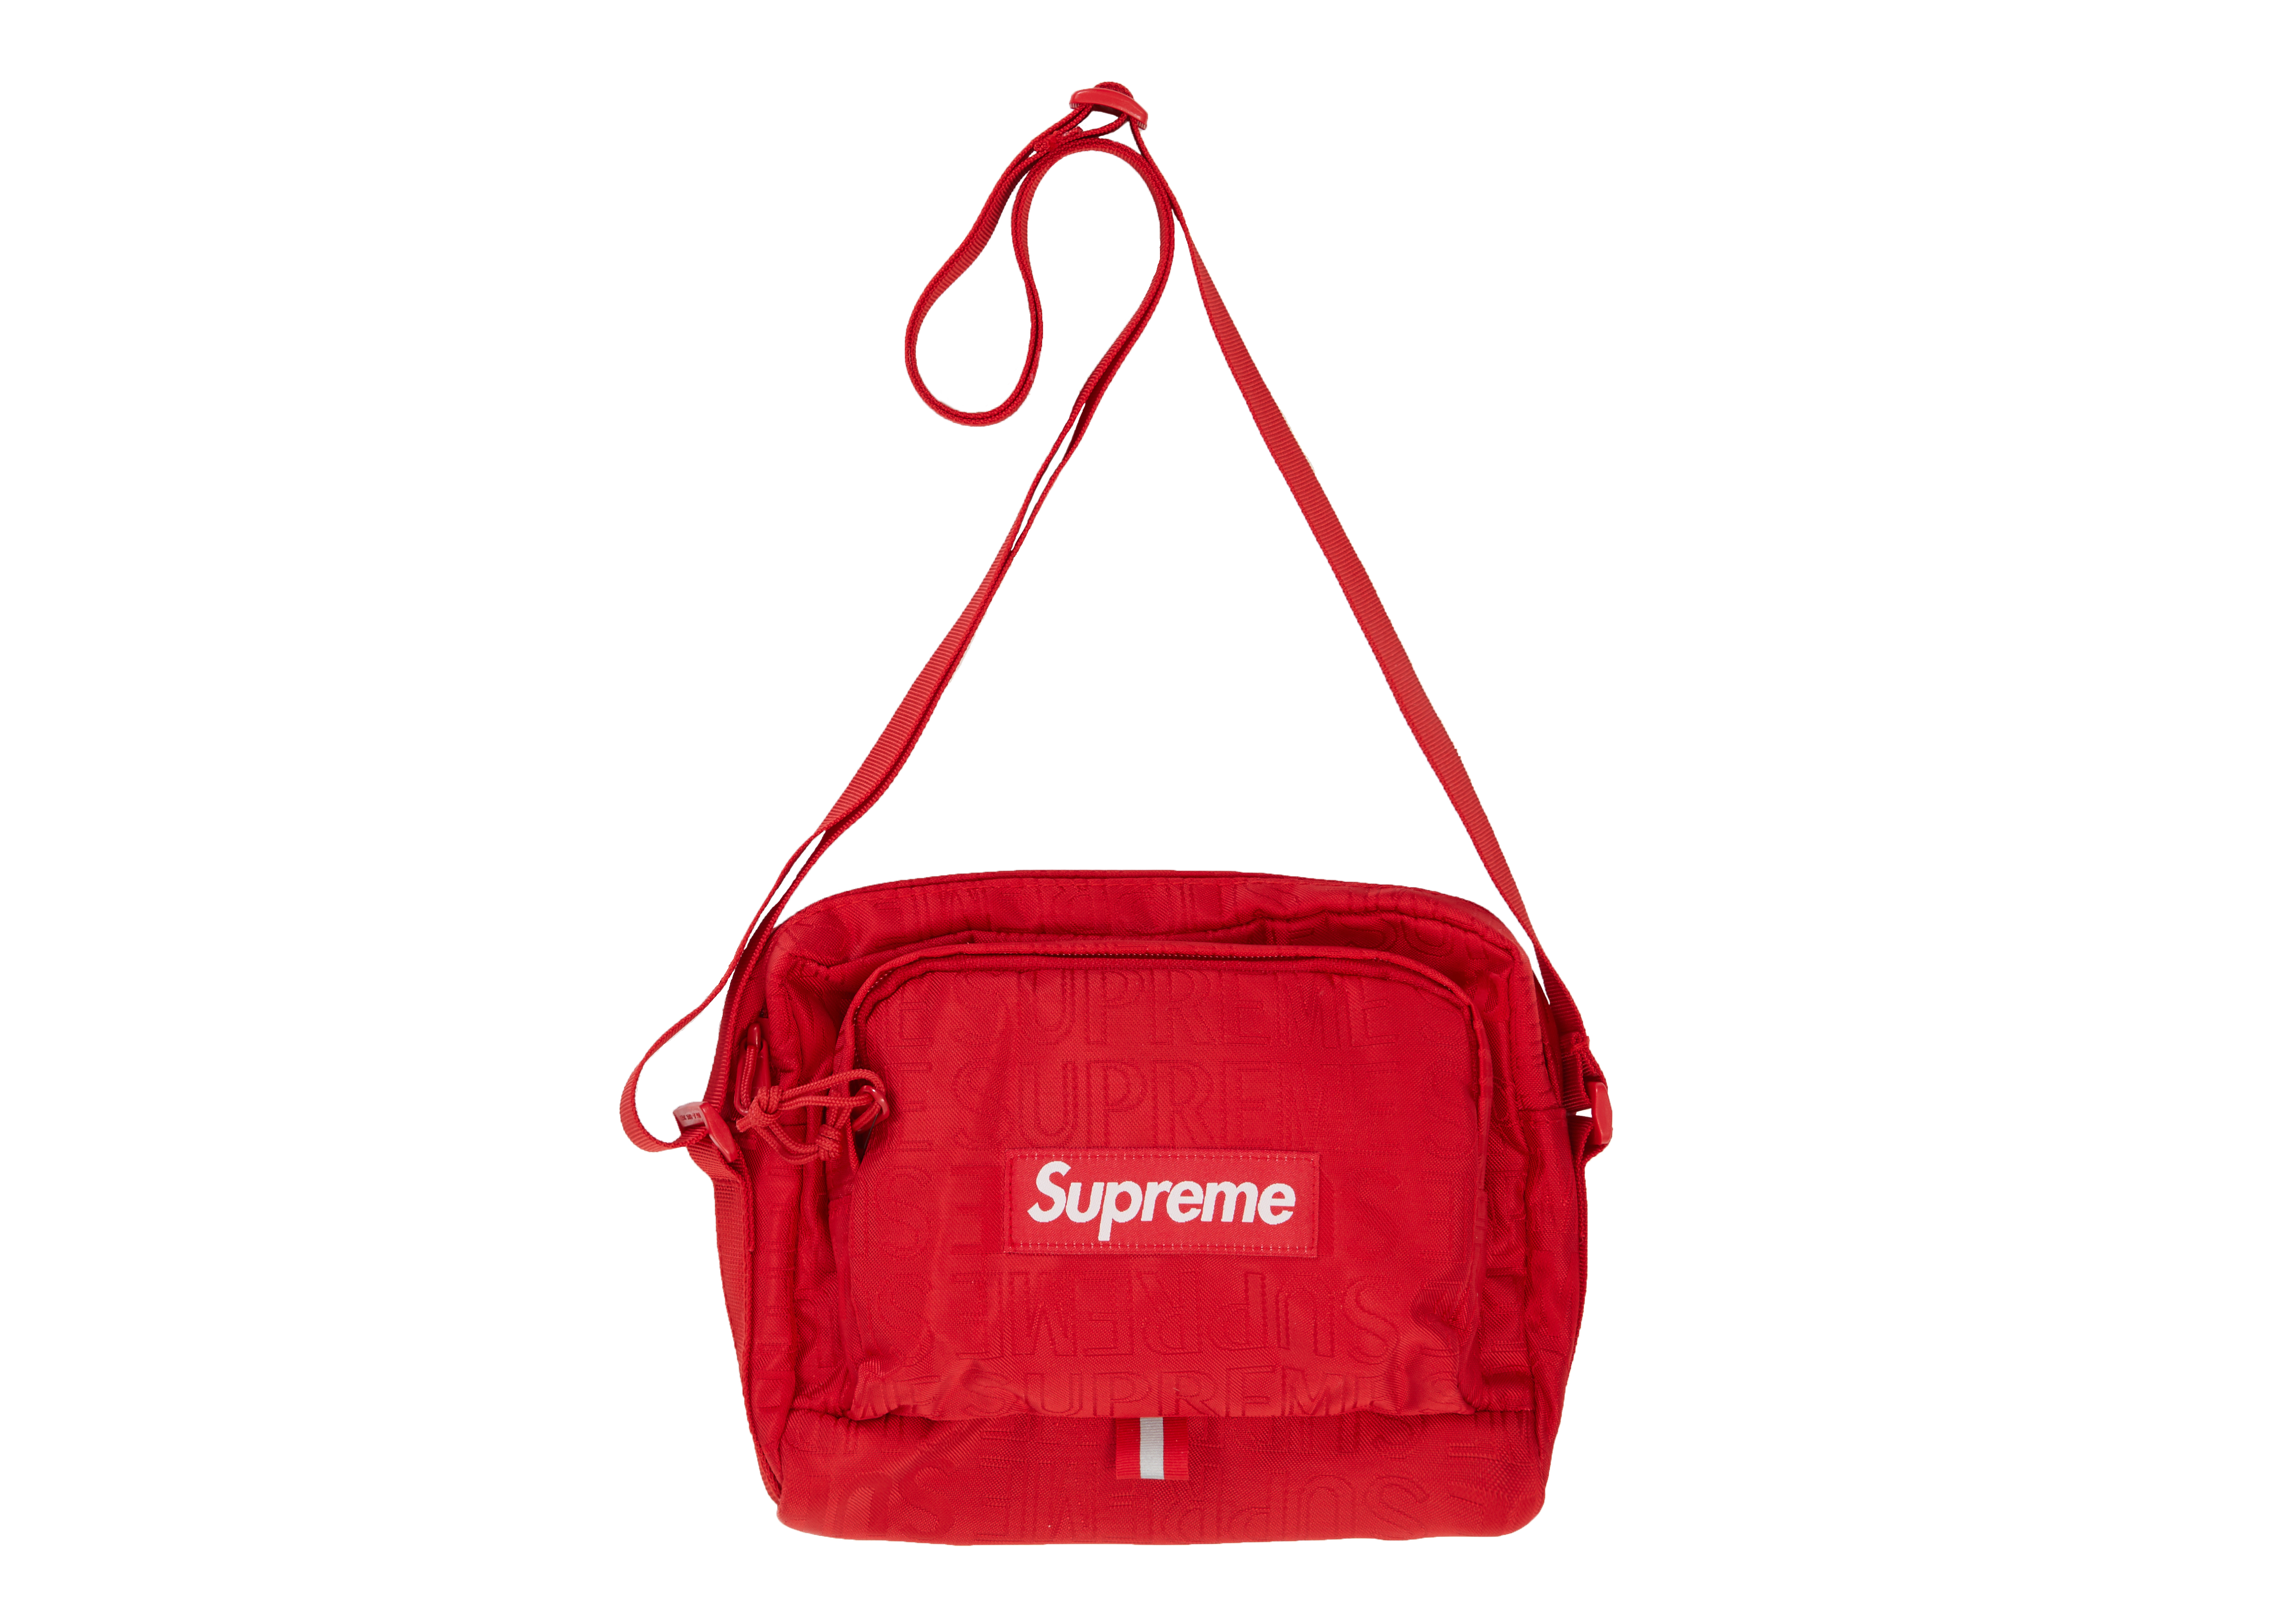 red supreme handbag